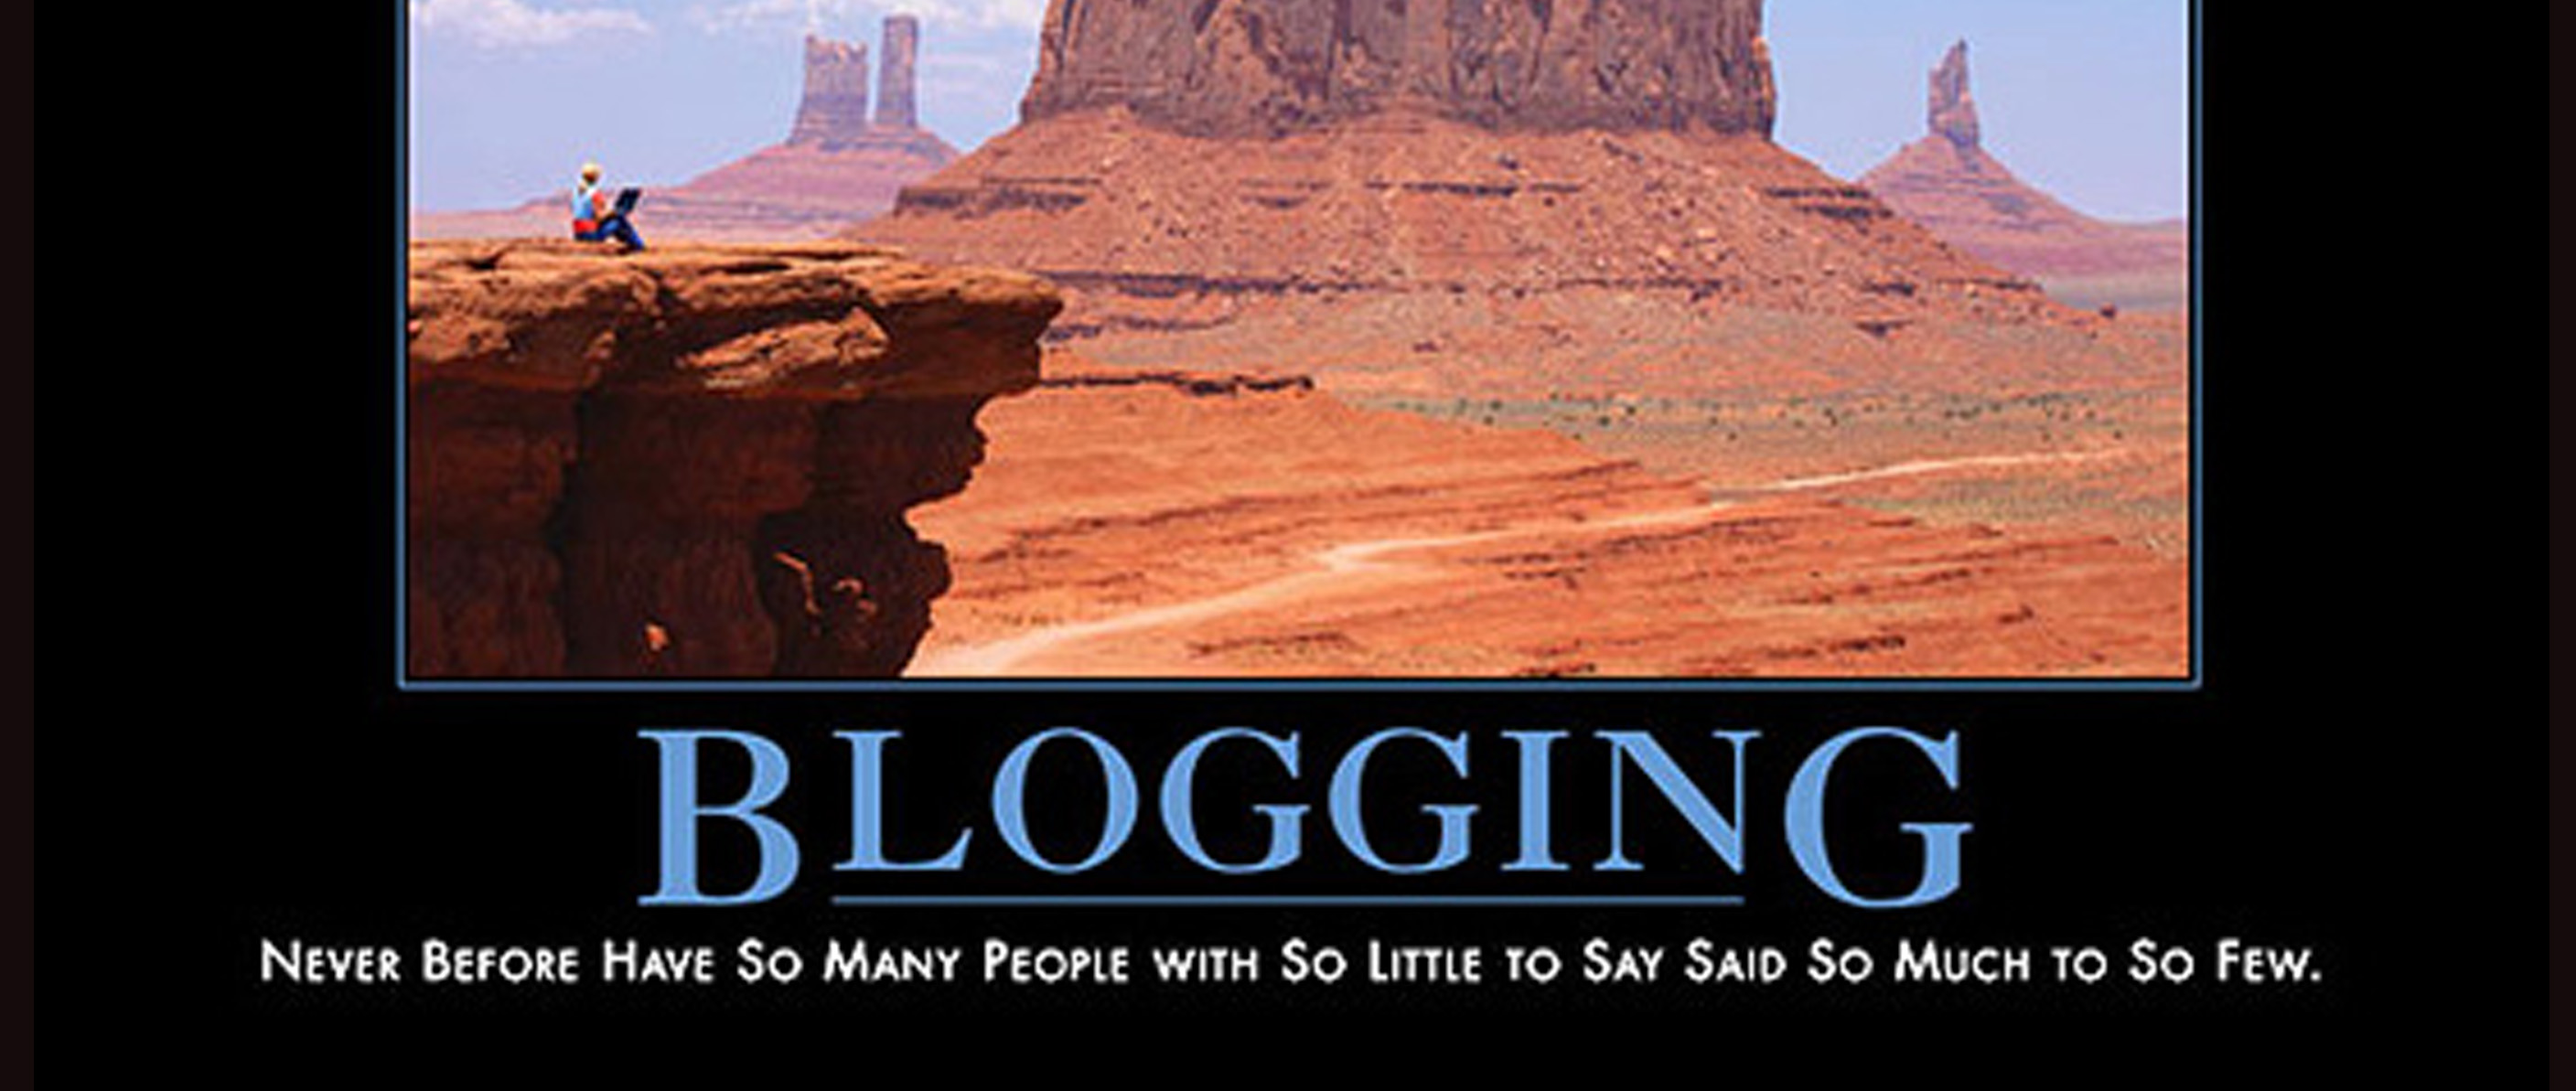 Blogging demotivational poster